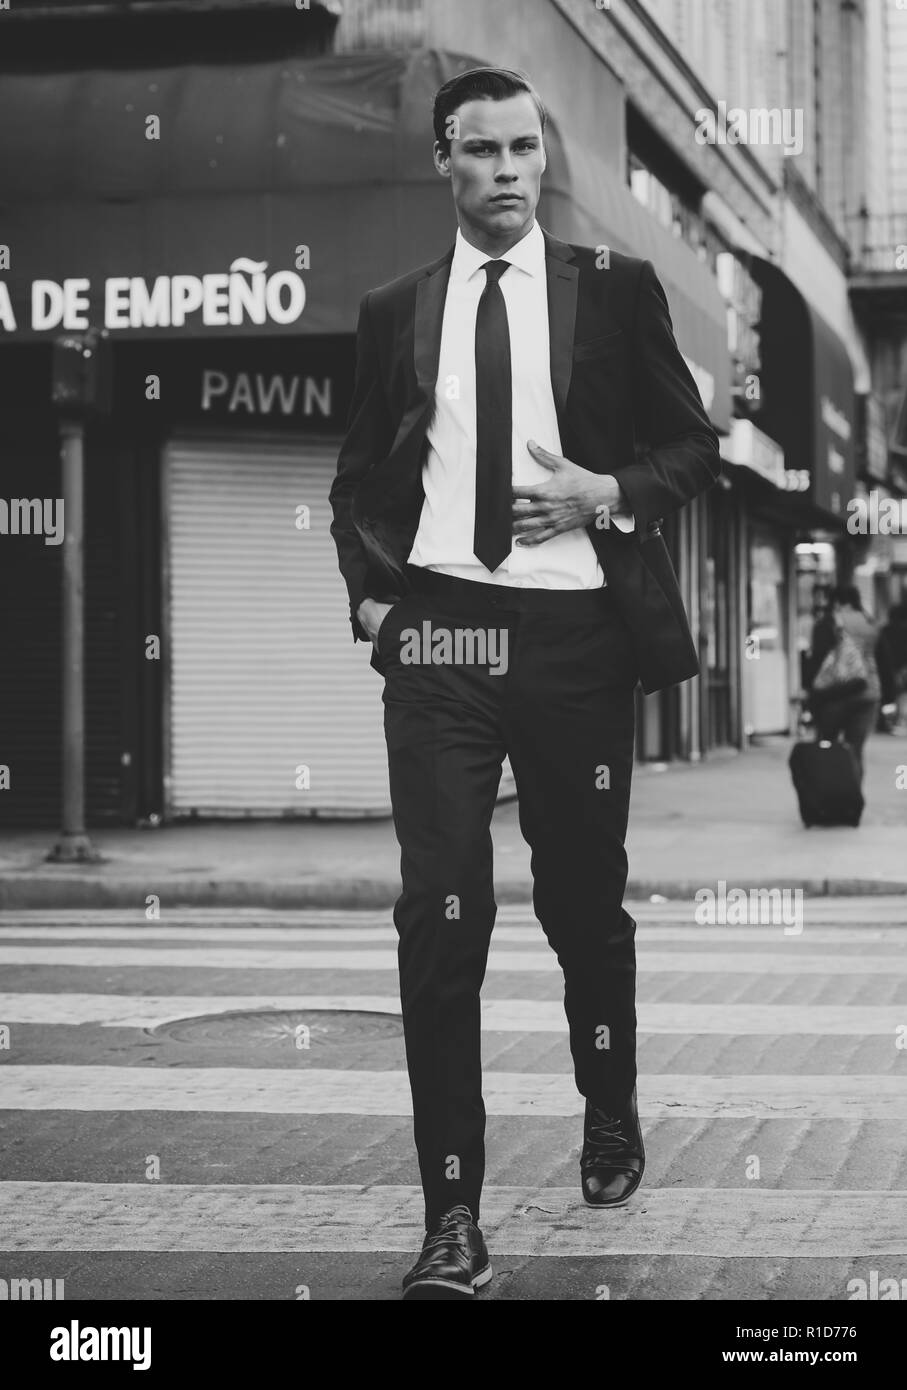 Un portrait en noir et blanc d'un modèle masculin de marcher dans les rues du centre-ville de Los Angeles. Il est beau et bien habillé dans un costume noir et une cravate. Banque D'Images